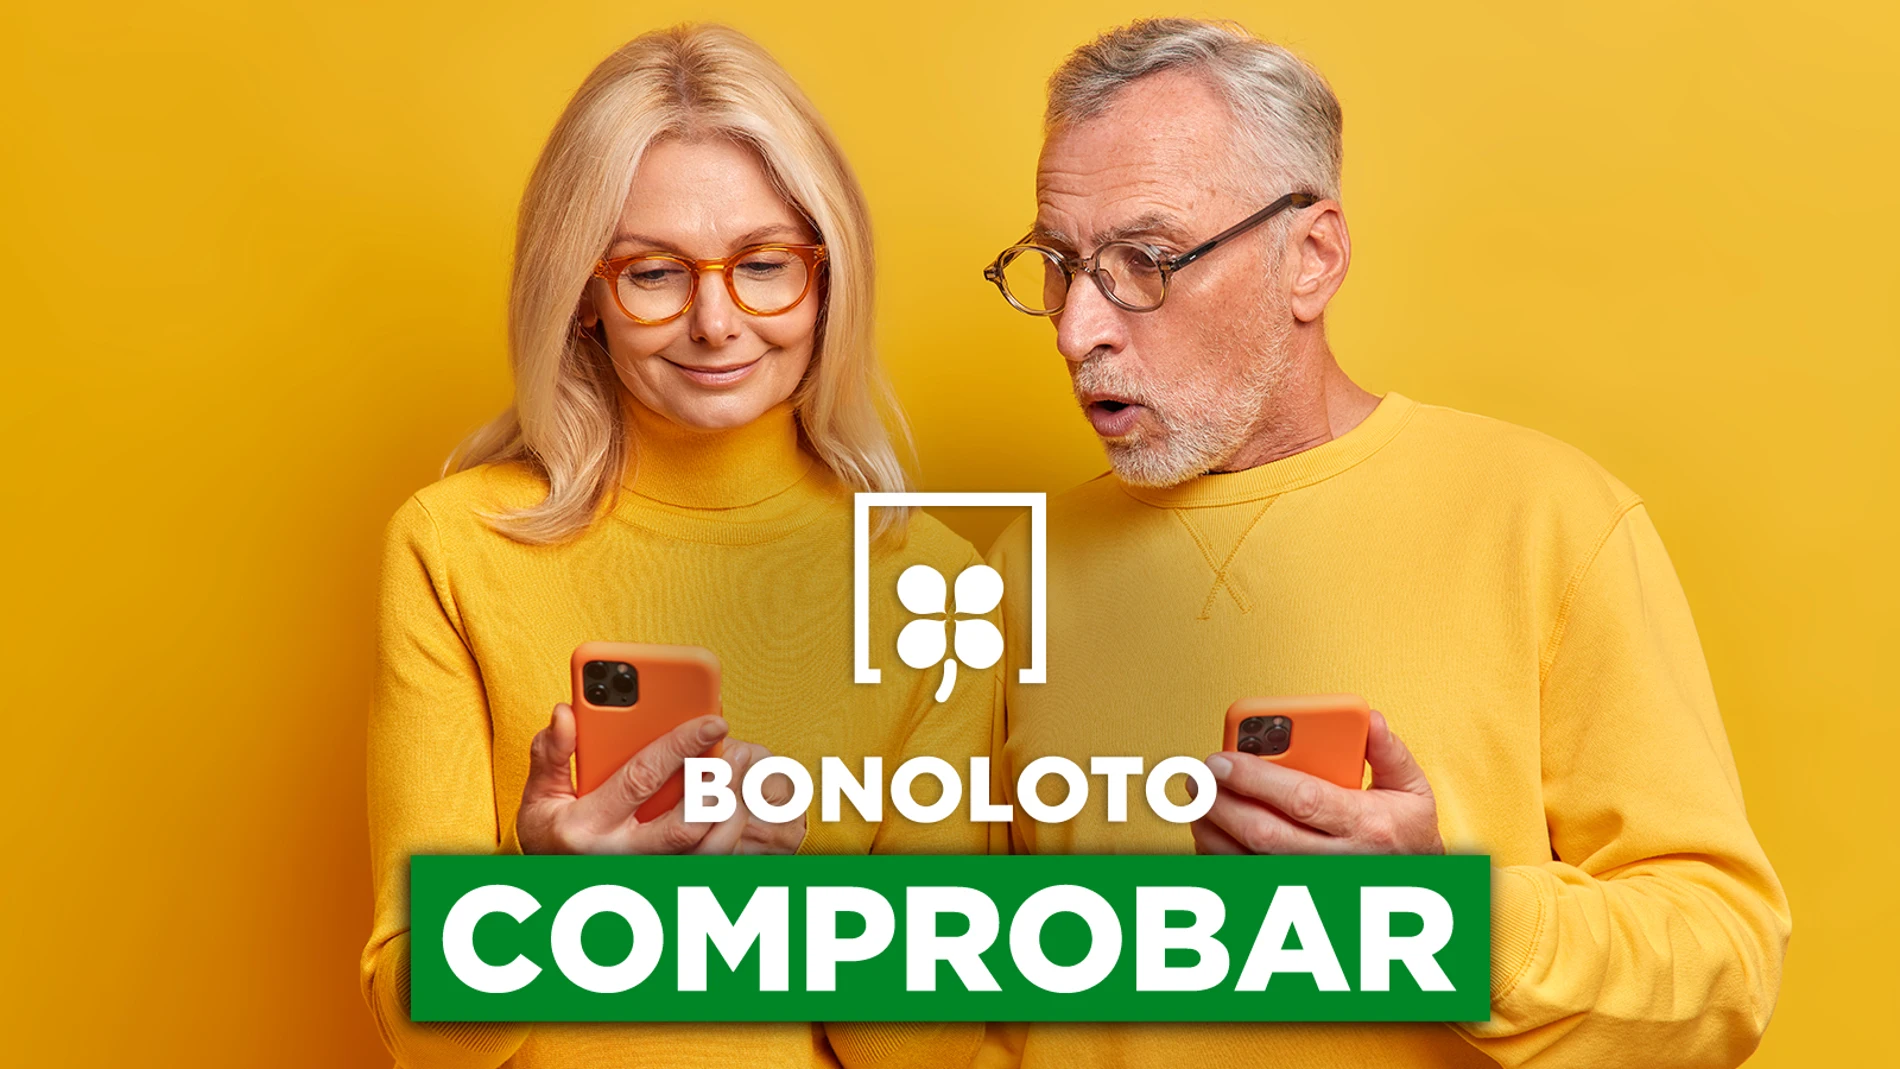 Bonoloto: comprobar hoy, viernes 6 de enero de 2023